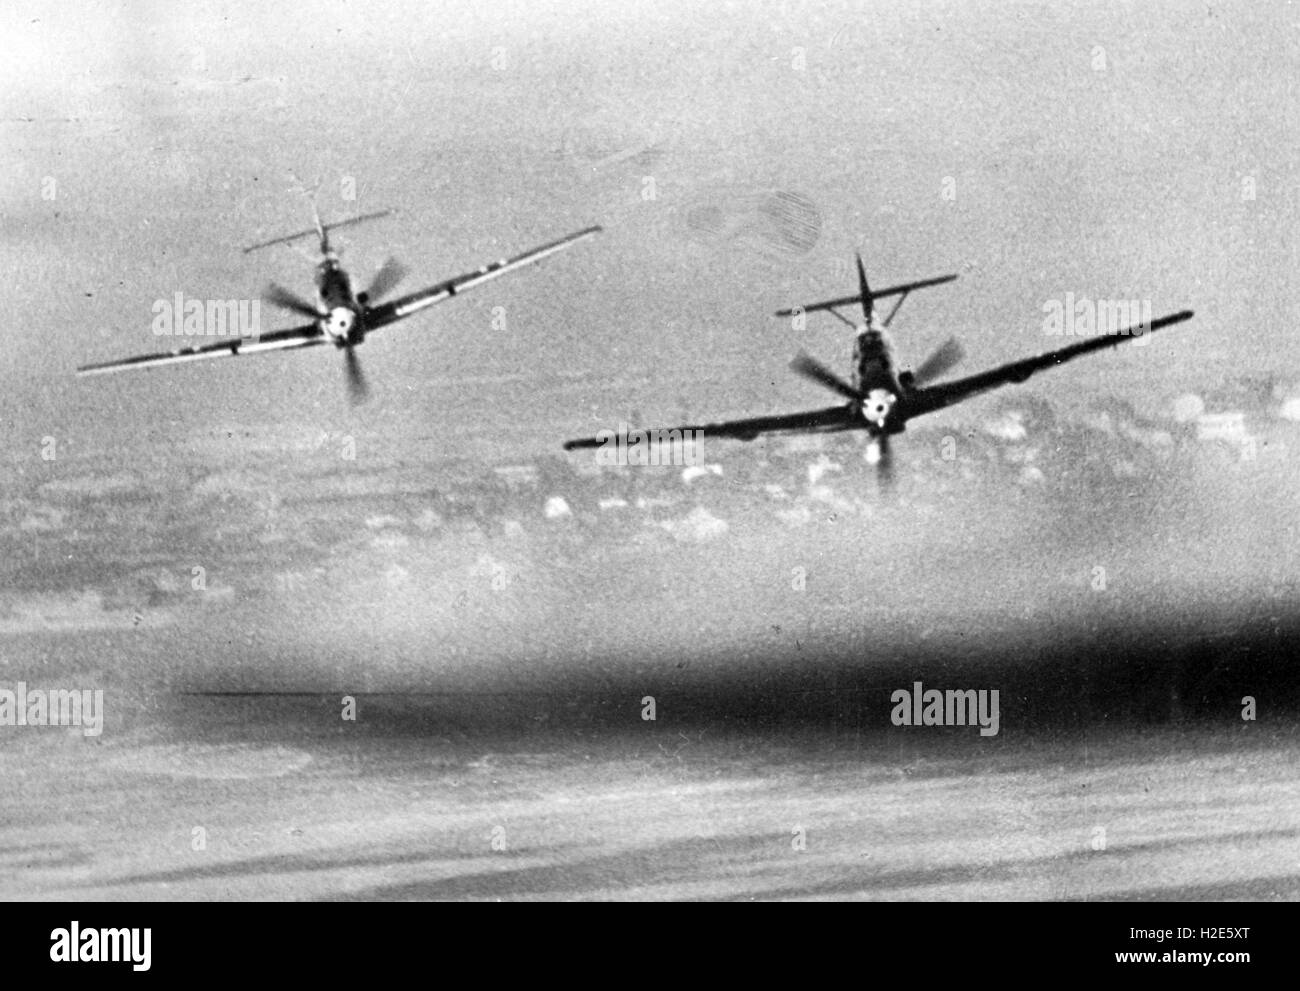 L'image de propagande nazie dépeint deux avions de chasse (type: Messerschmitt BF 109, communément appelé me 109) de la Wehrmacht allemande. La photo a été publiée en décembre 1939. Fotoarchiv für Zeitgeschichte - PAS DE SERVICE DE FIL - | utilisation dans le monde entier Banque D'Images